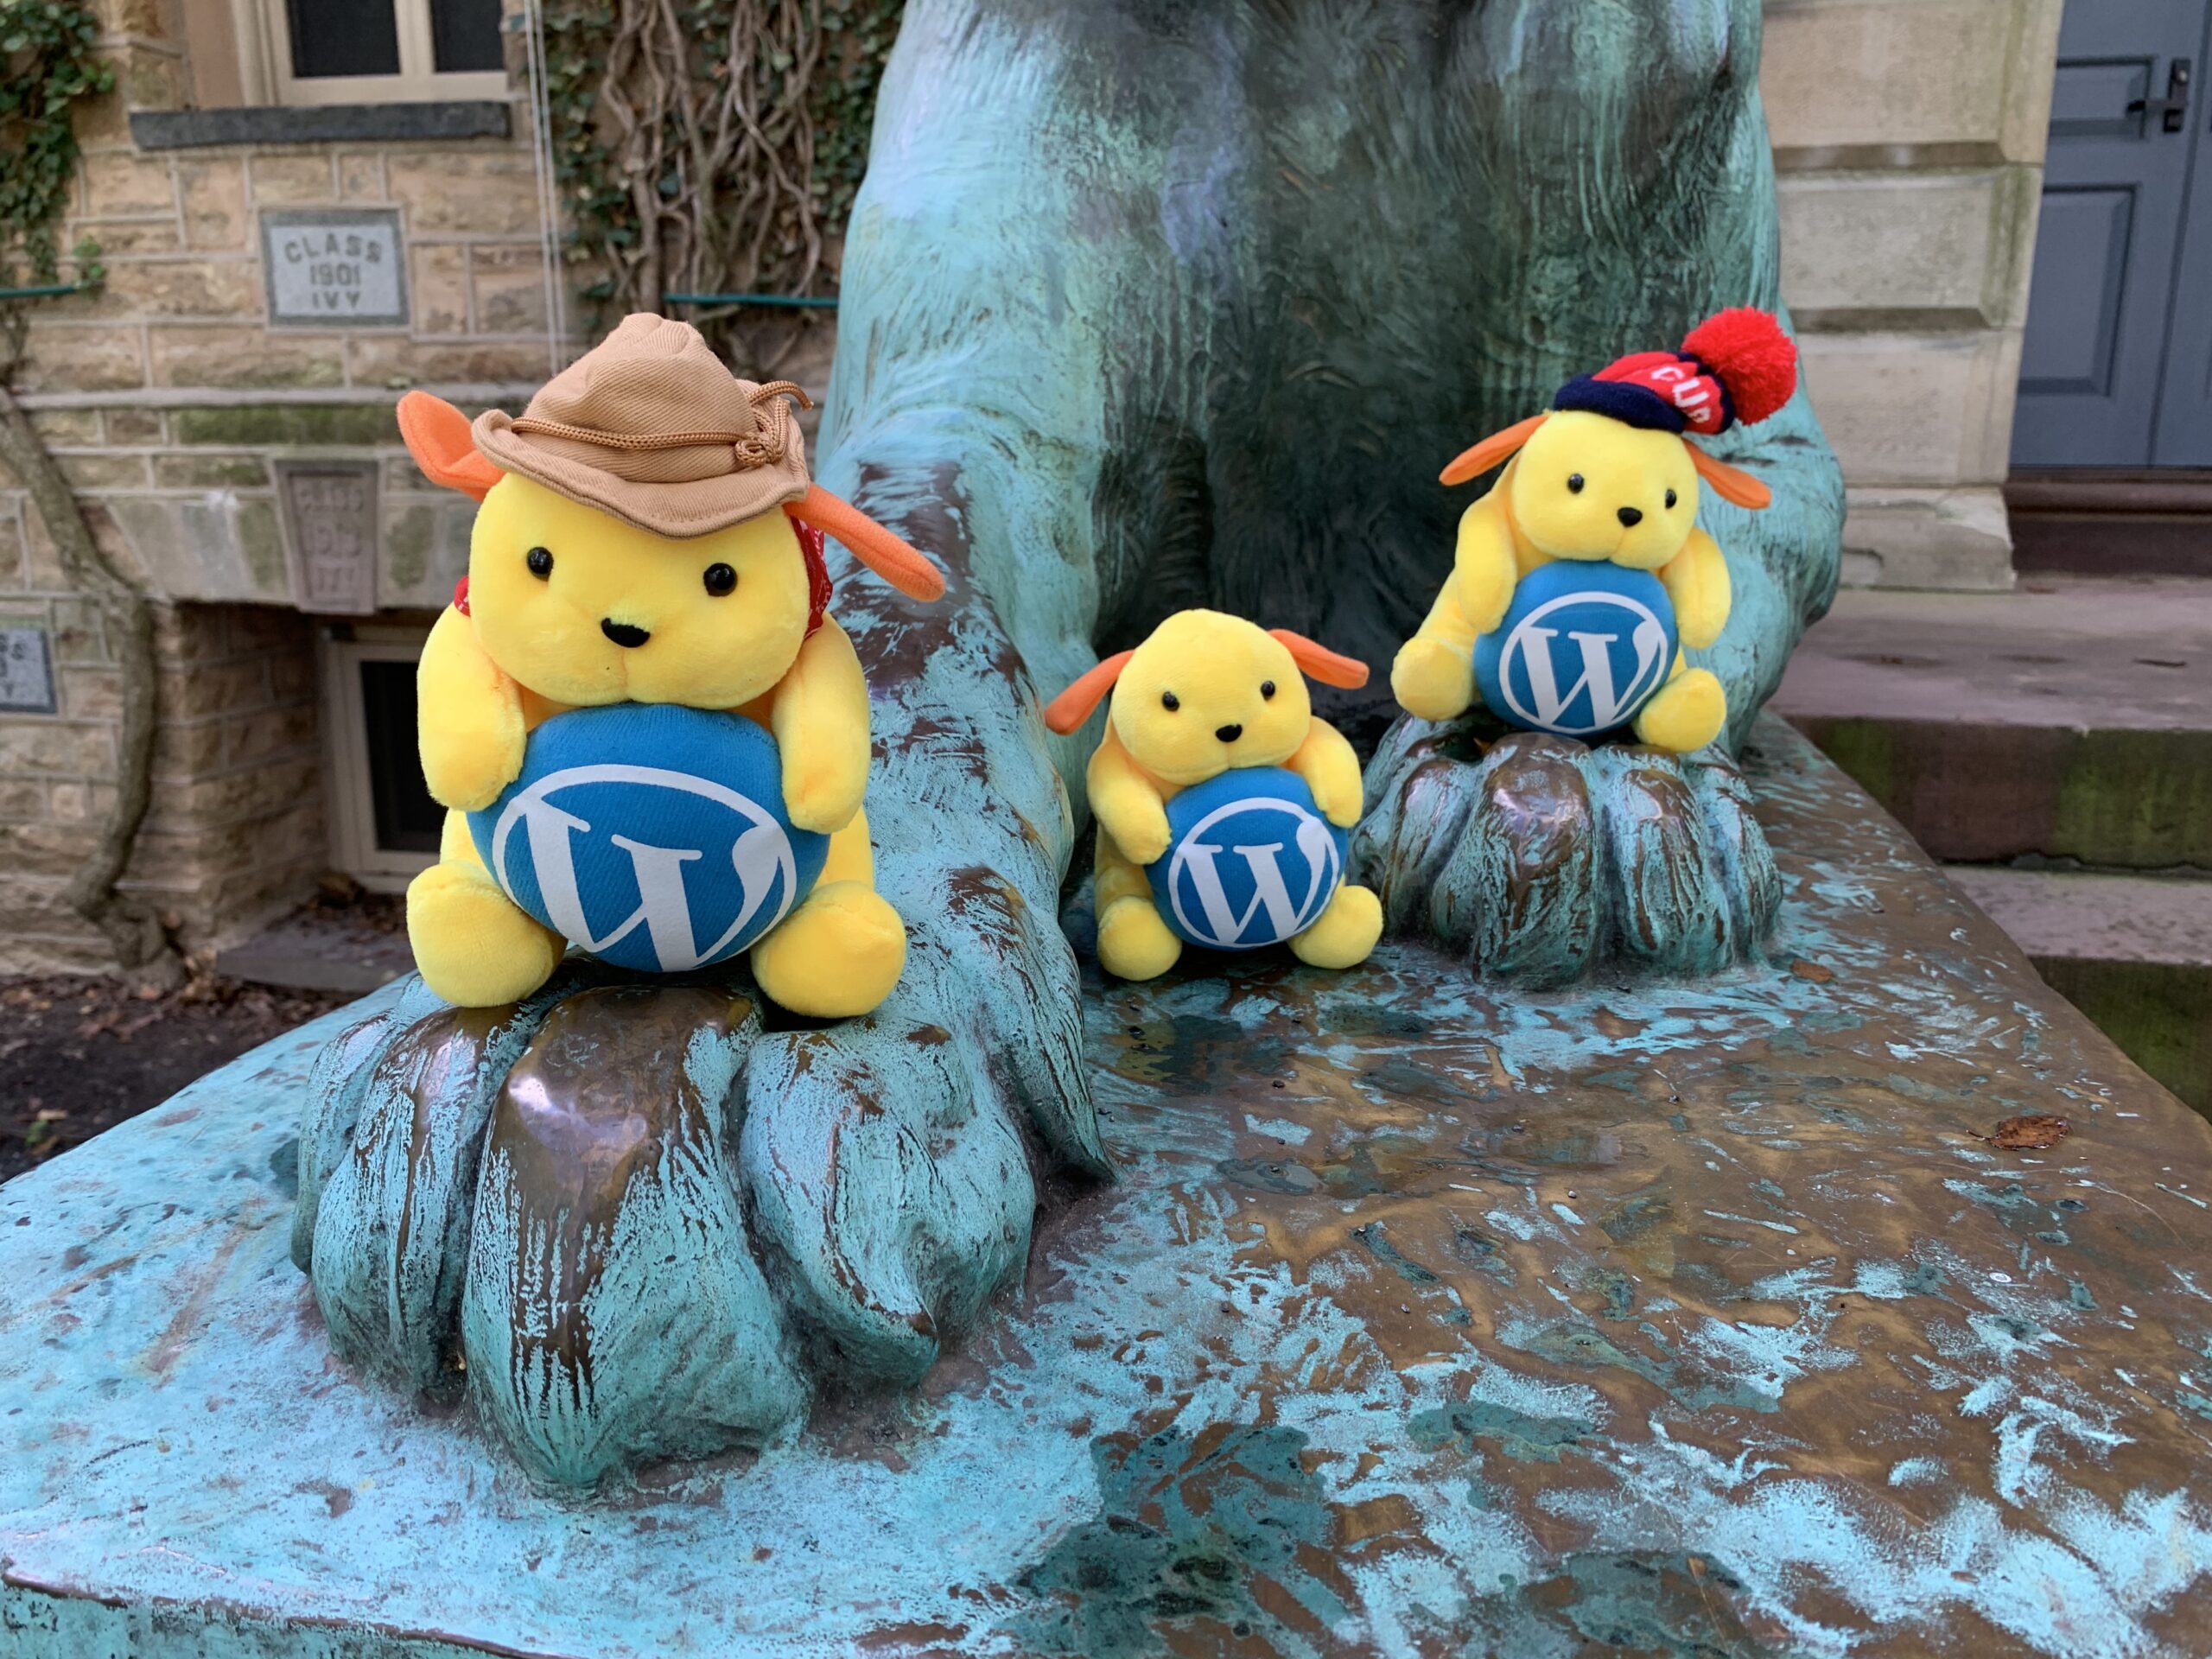 Stuffed WordPress mascots sitting on feet of Nassau Hall tiger